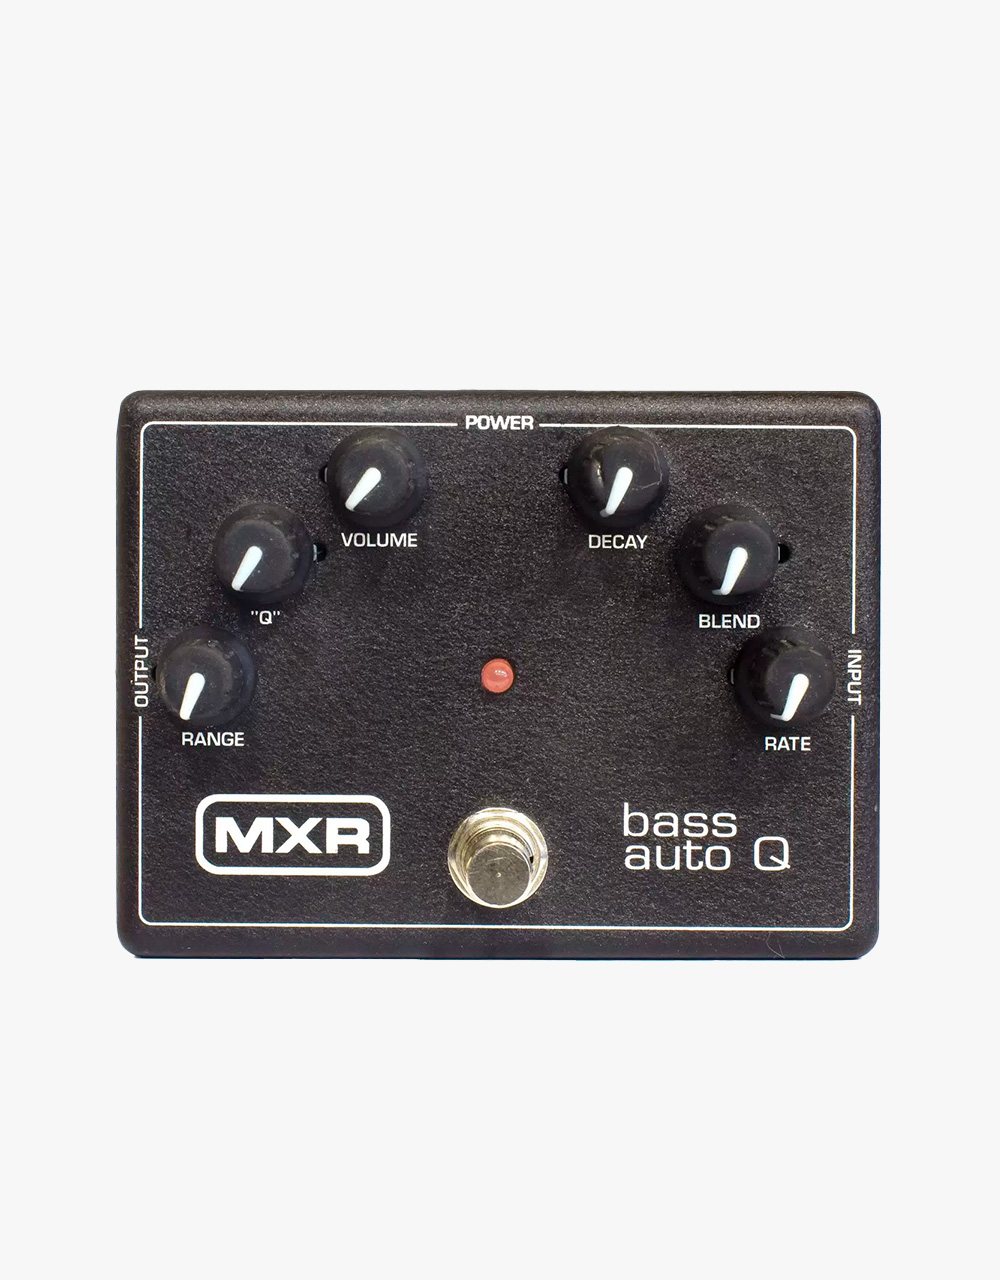 Гитарная педаль Dunlop MXR M188 Bass Auto Q - купить в "Гитарном Клубе"